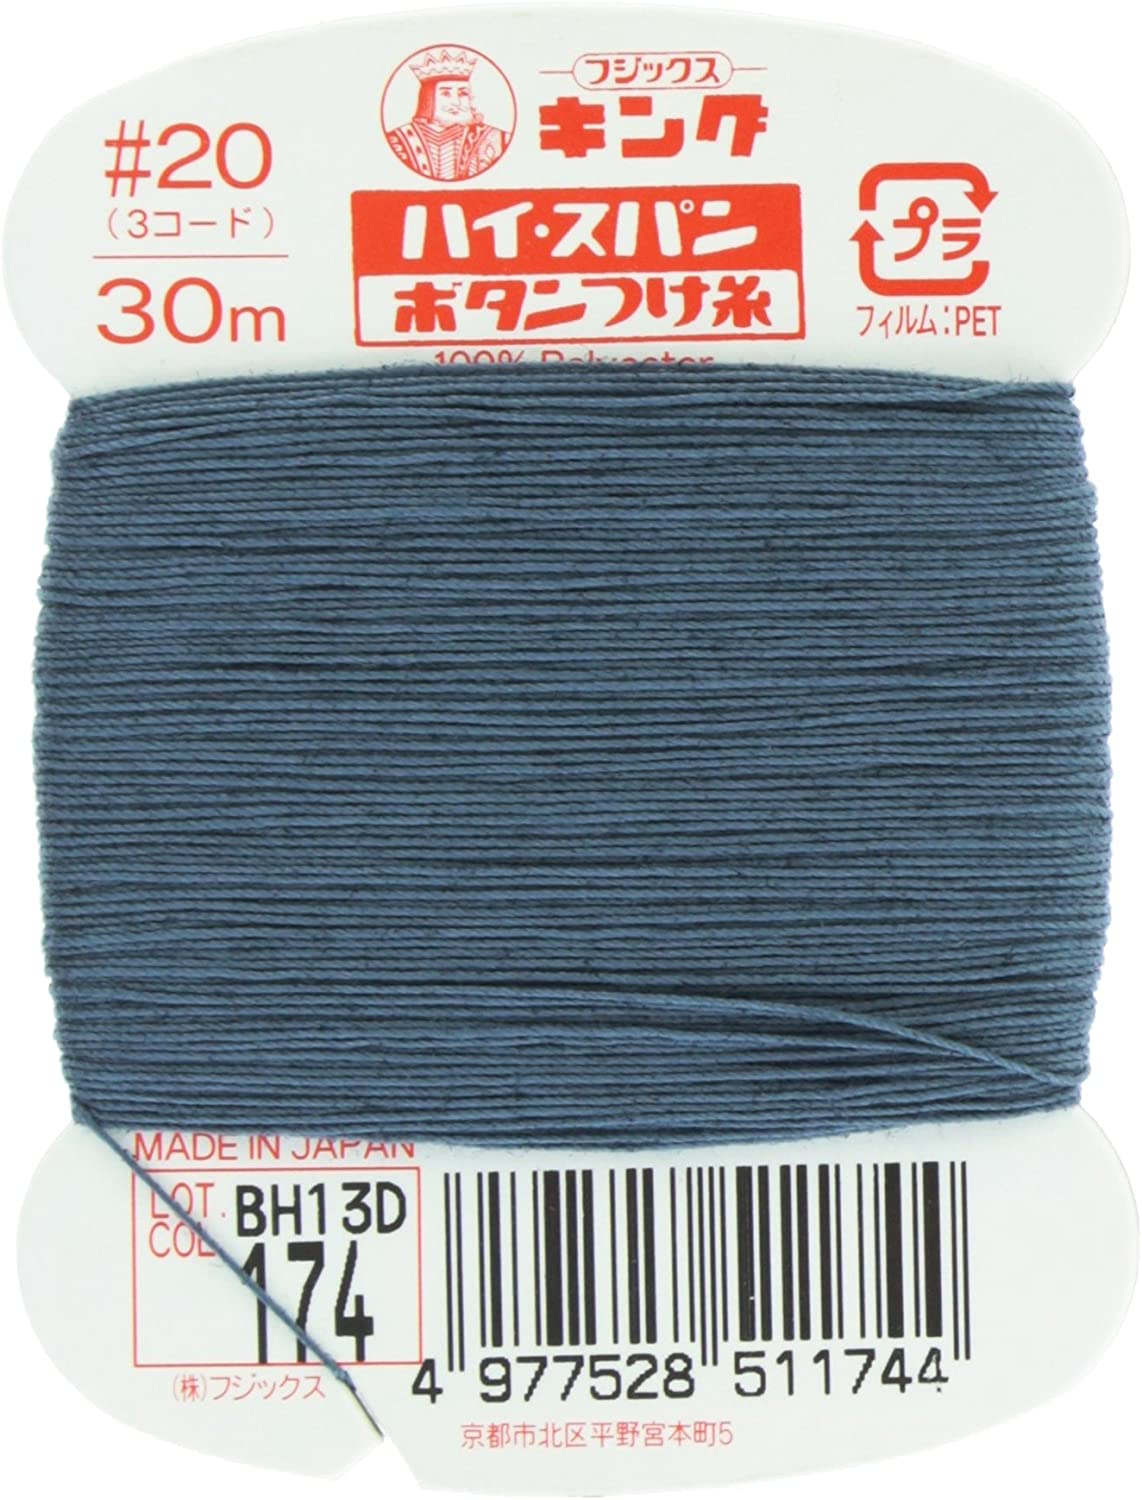 FK51-174 ハイスパンボタンつけ糸 #20 30m巻 (枚)